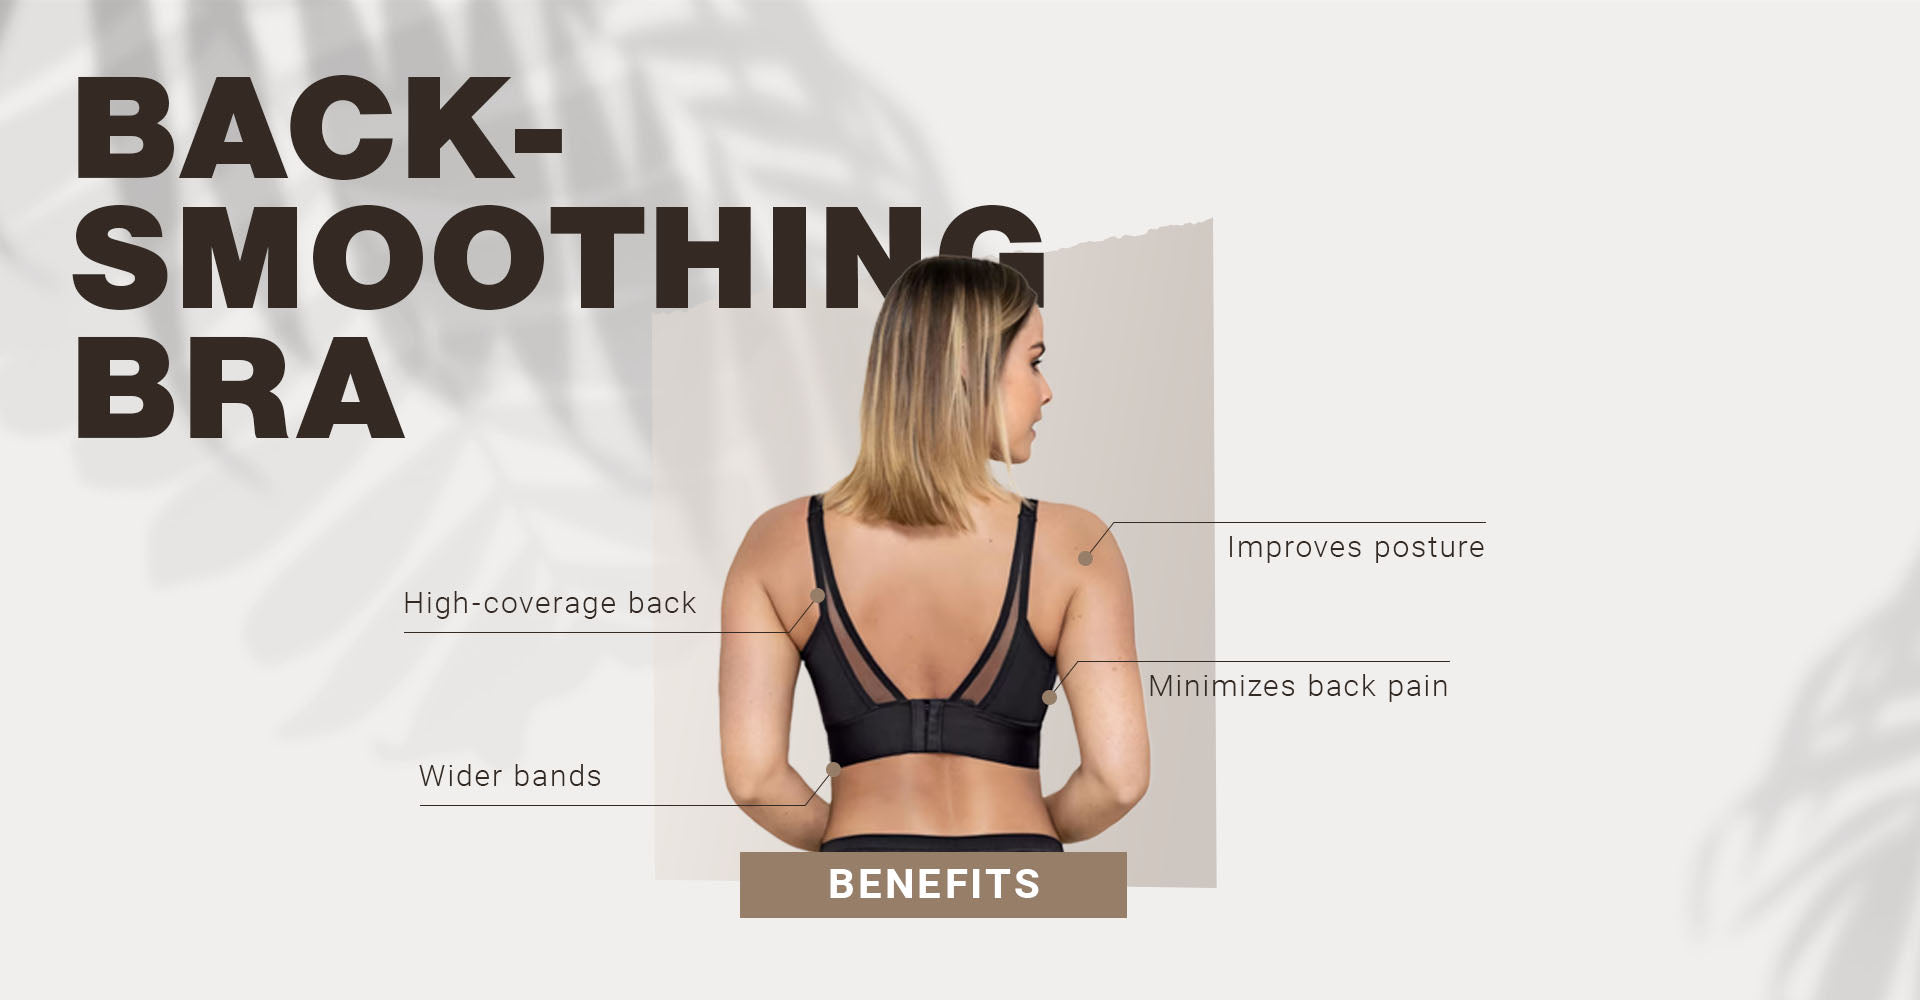 Back-Smoothing Bra Benefits